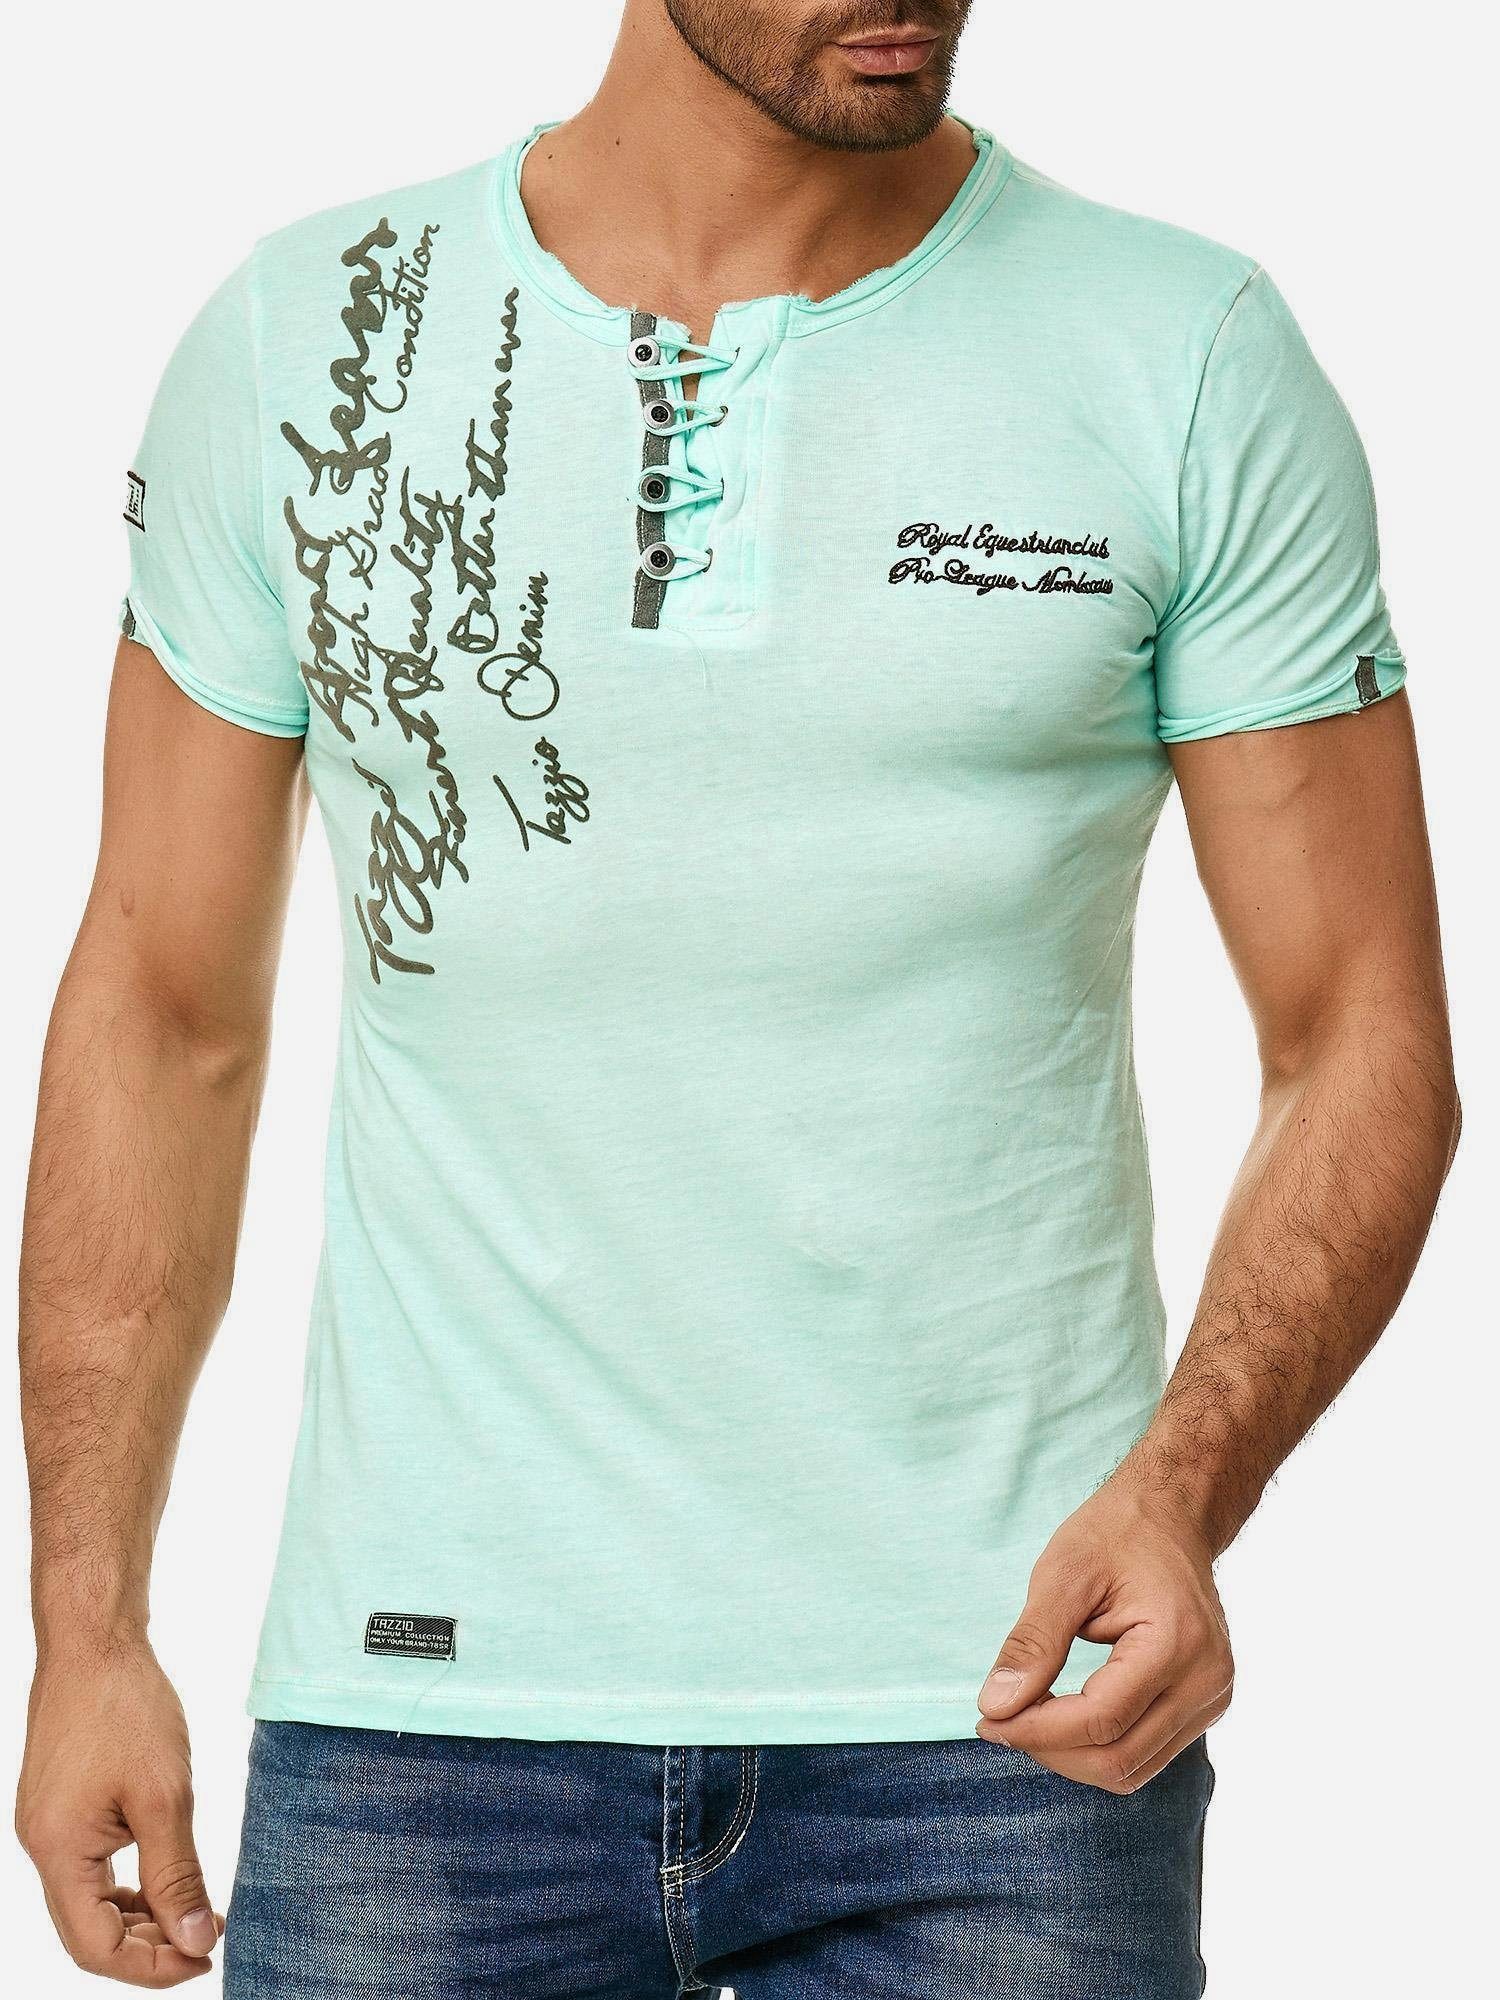 Used und mint T-Shirt in mit Look Kragen 4050-1 Tazzio dezentem Ölwaschung Rundhalsshirt offenem